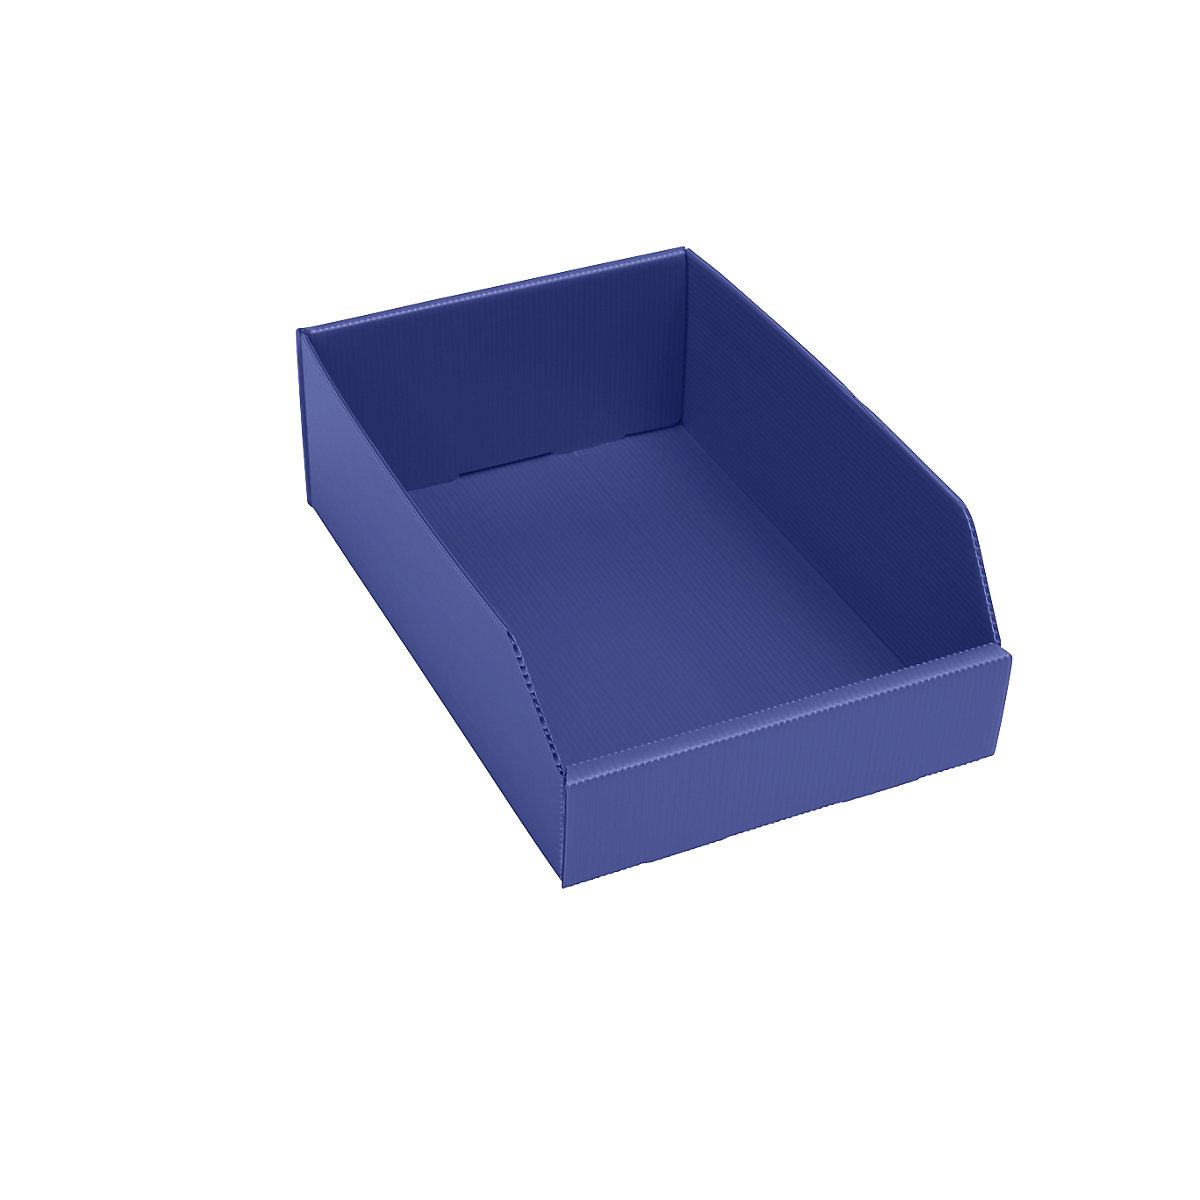 Caixa de plástico para estante, dobrável, CxLxA 300x200x100 mm, azul, embalagem com 25 unidades-6